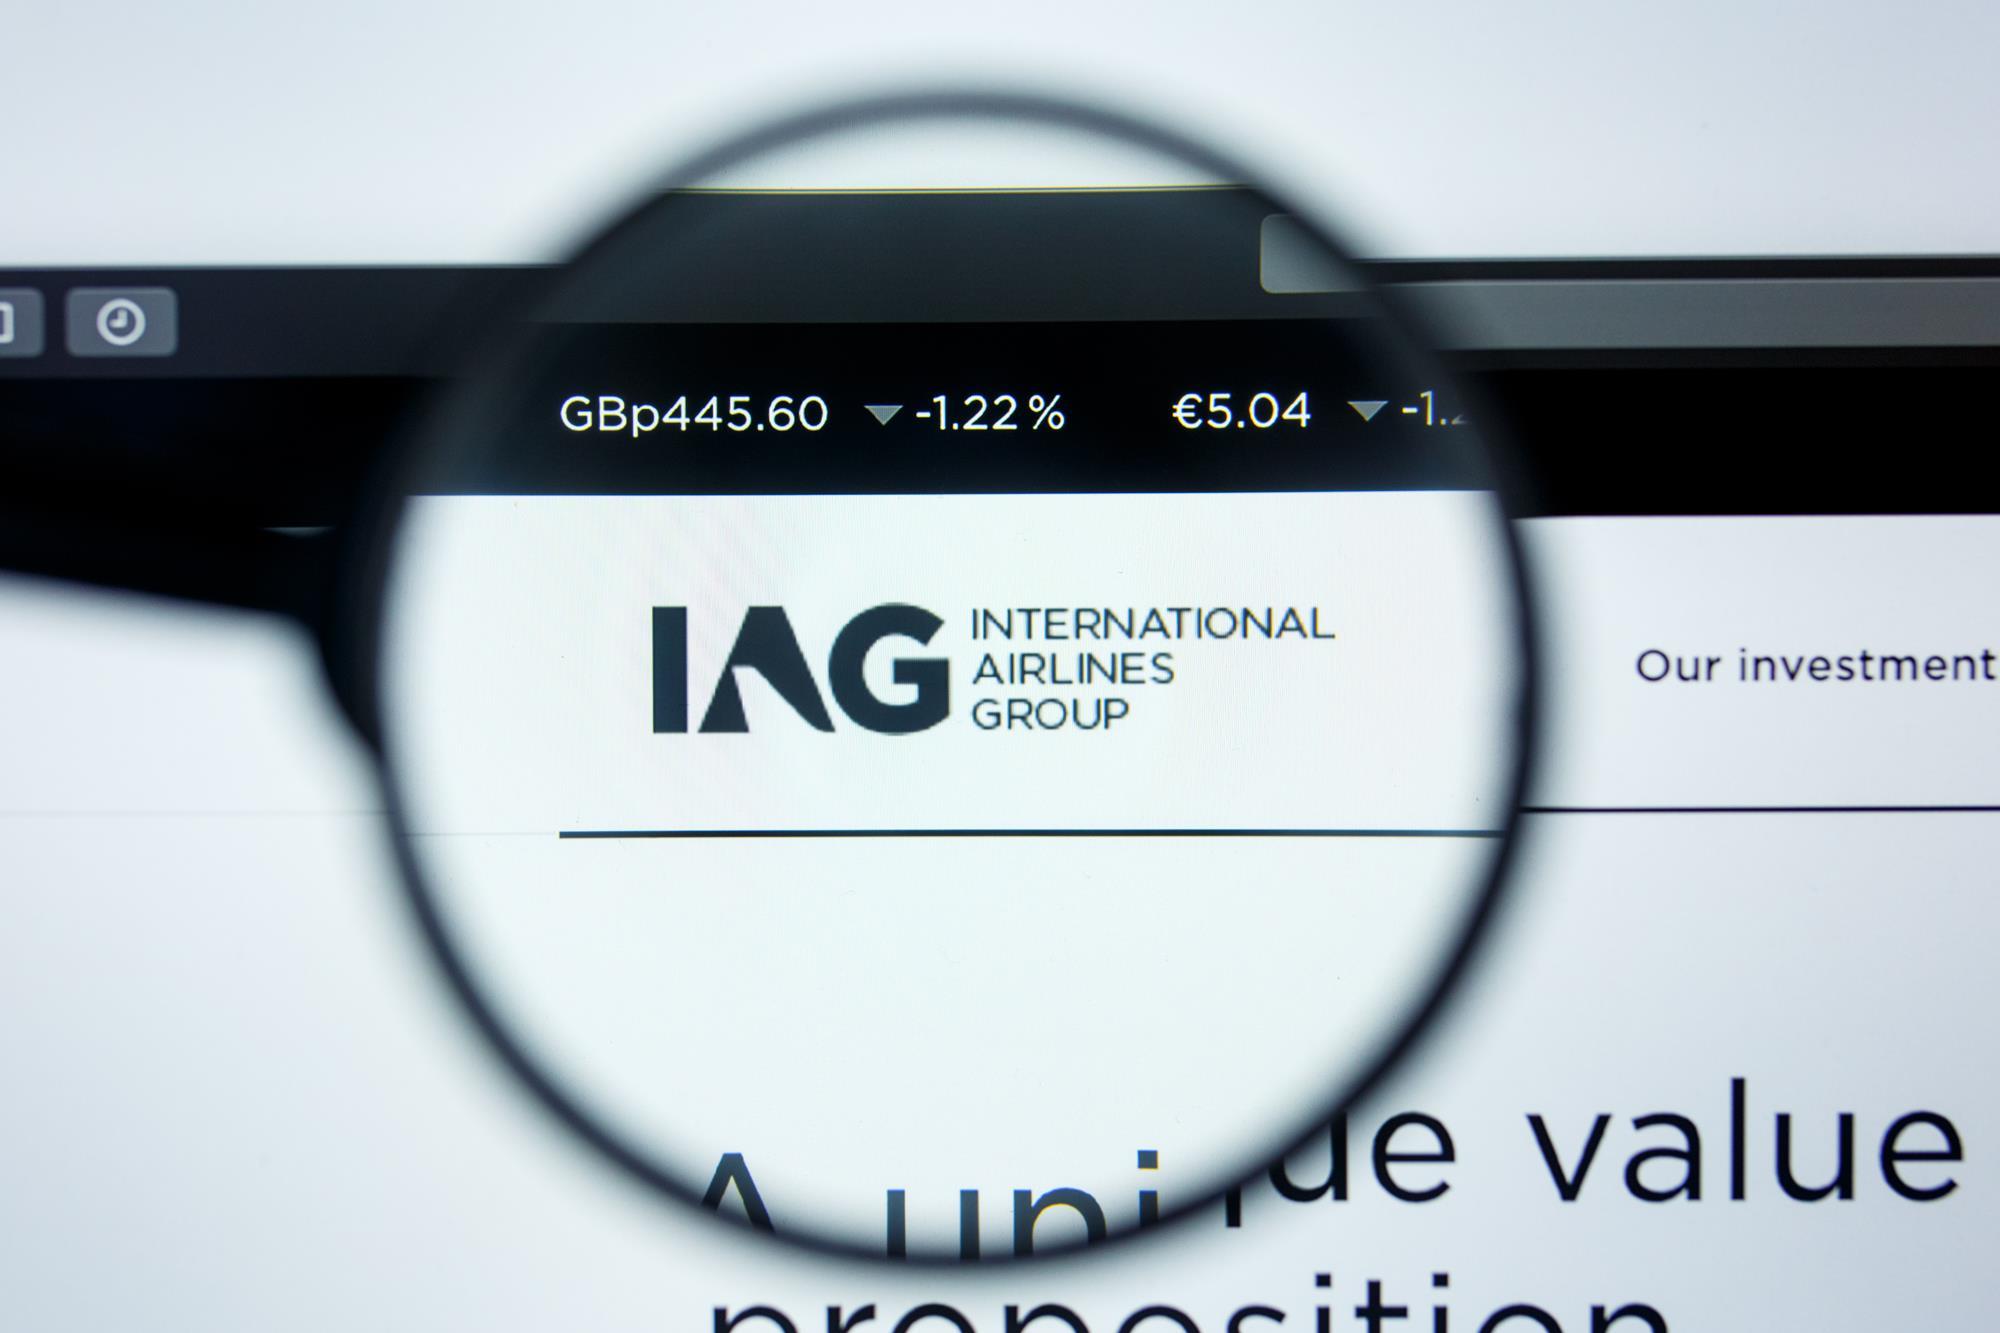 IAG, Image Analysis Group